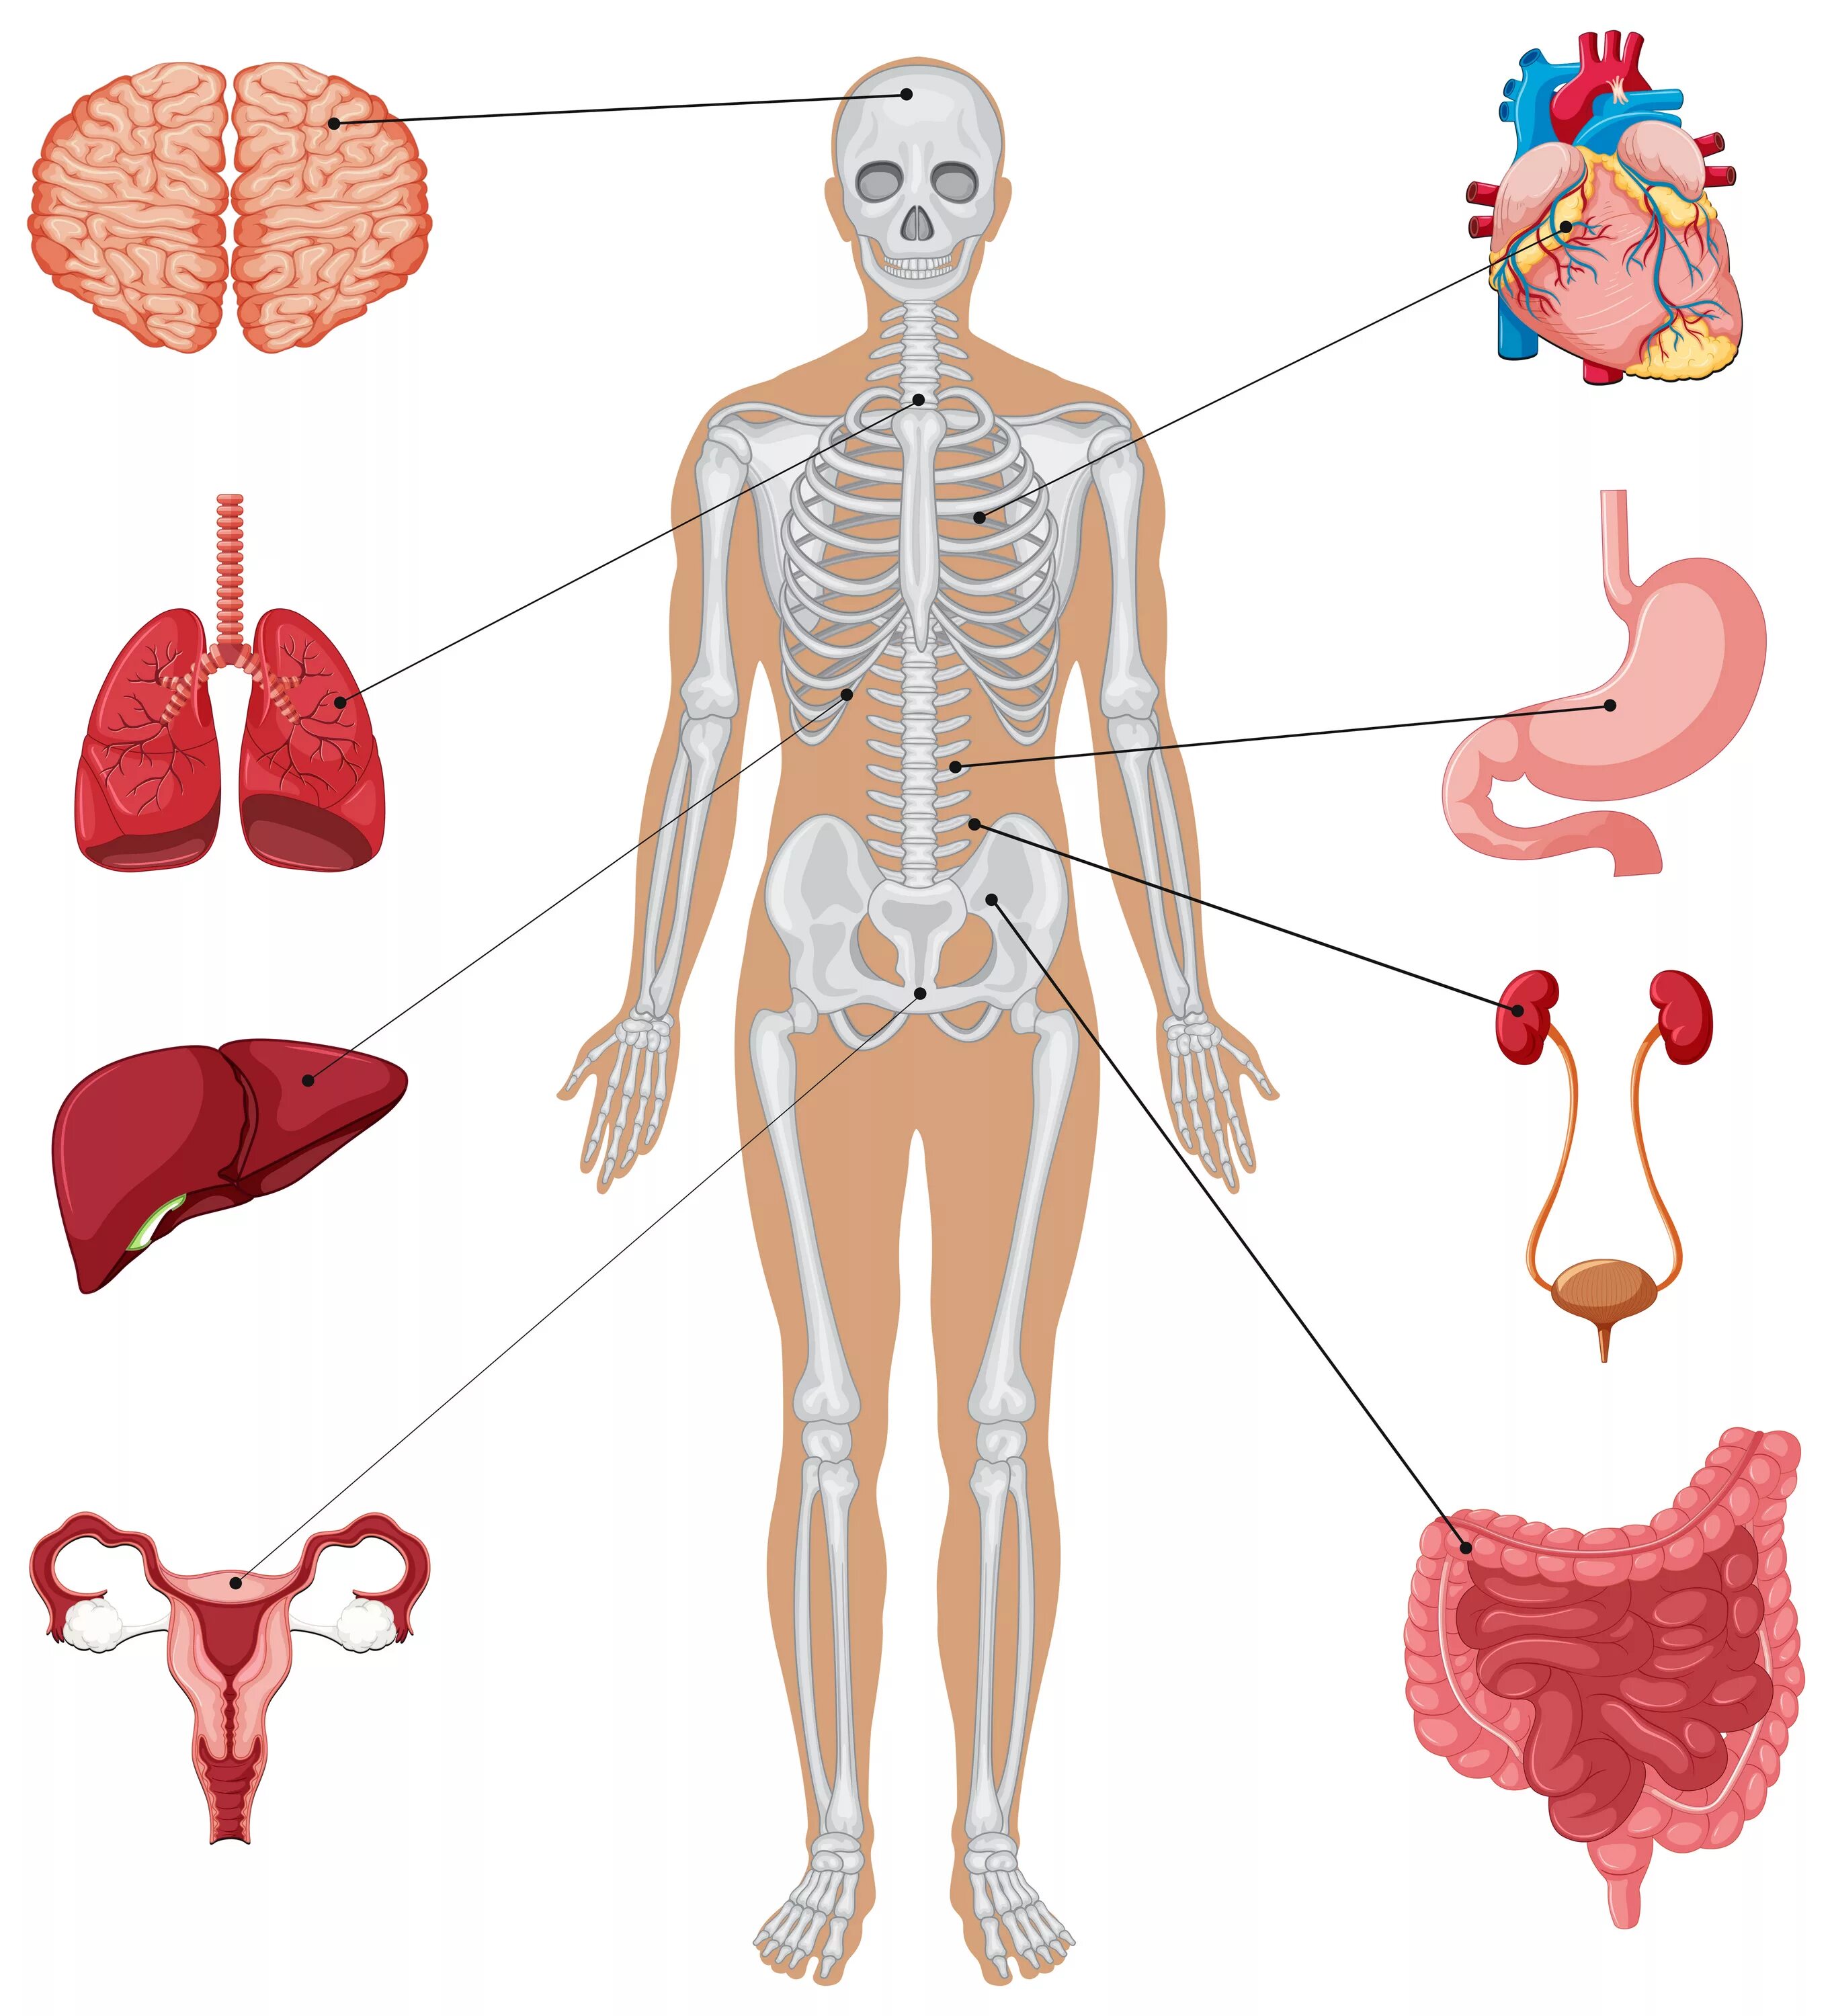 Макет строения внутренних органов человека. Анатомия человека внутренние органы и скелет. Макет человека с органами. Фигура человека с органами. Схема органов и скелета человека.